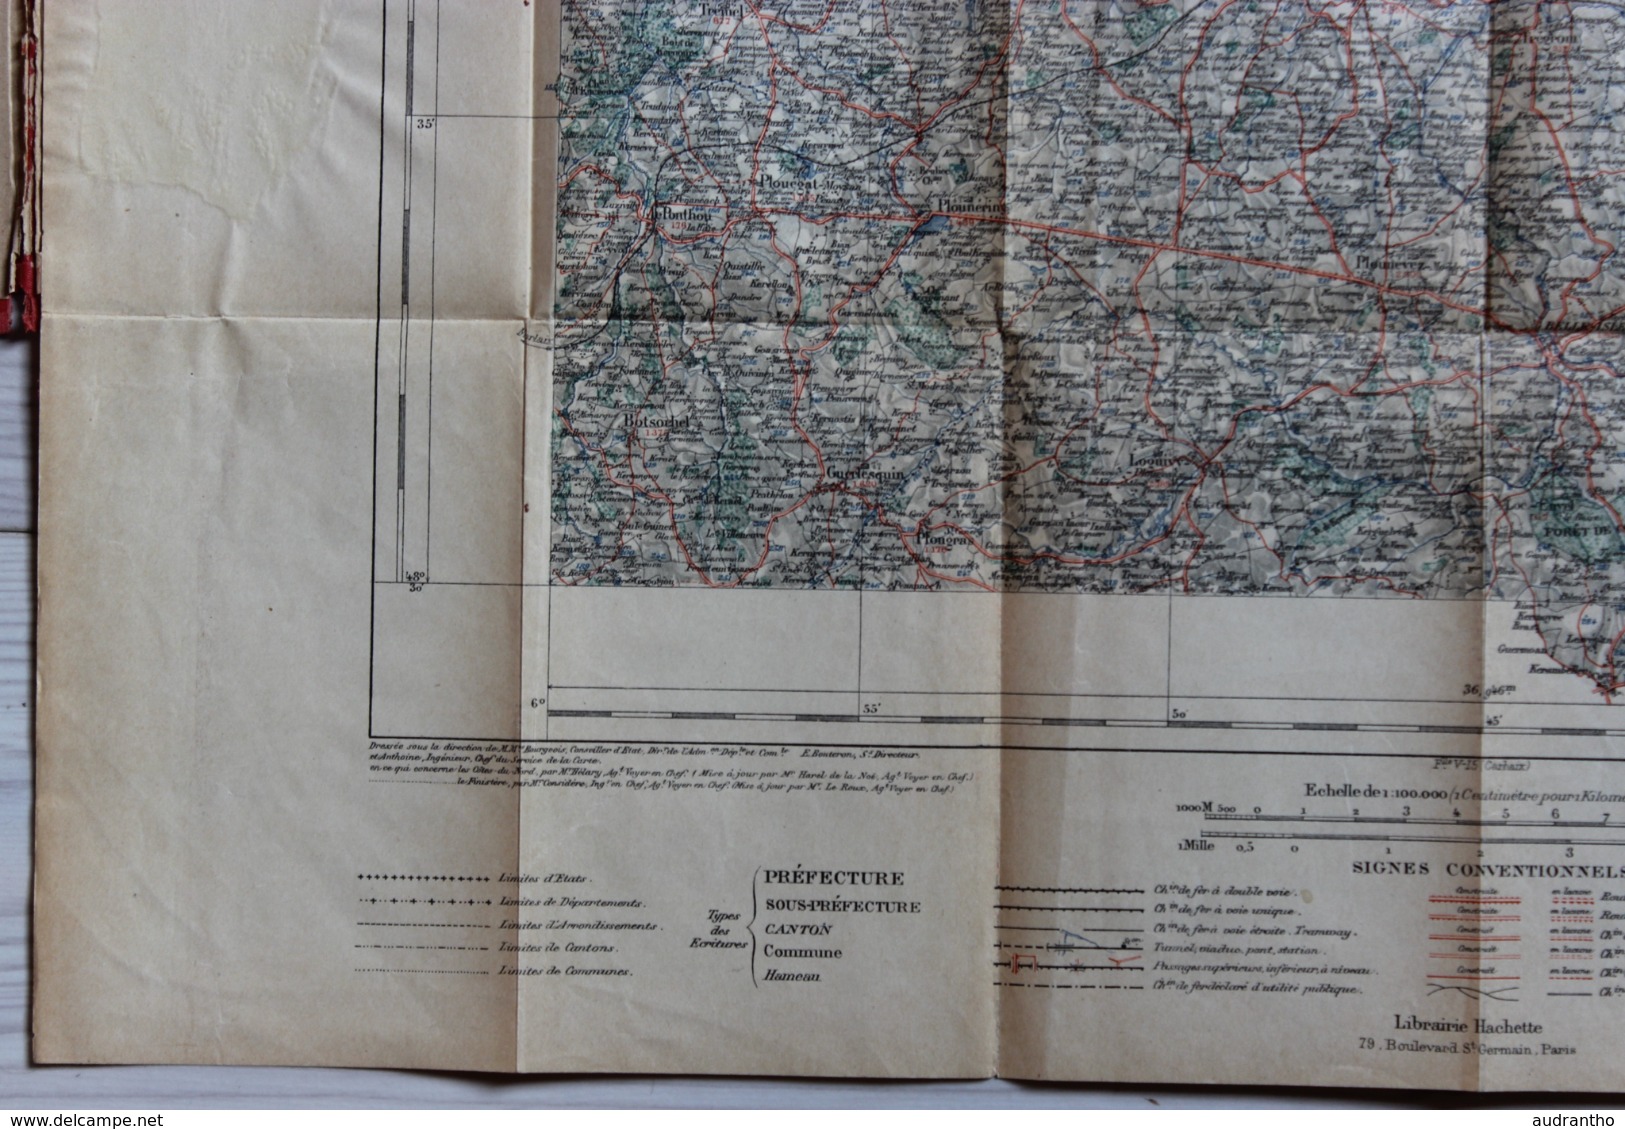 Carte Au 100.000 De Lannion Tirage De 1925 Ministère De L'Intérieur Ministère De La Guerre Service Géographique Hachette - Cartes Géographiques